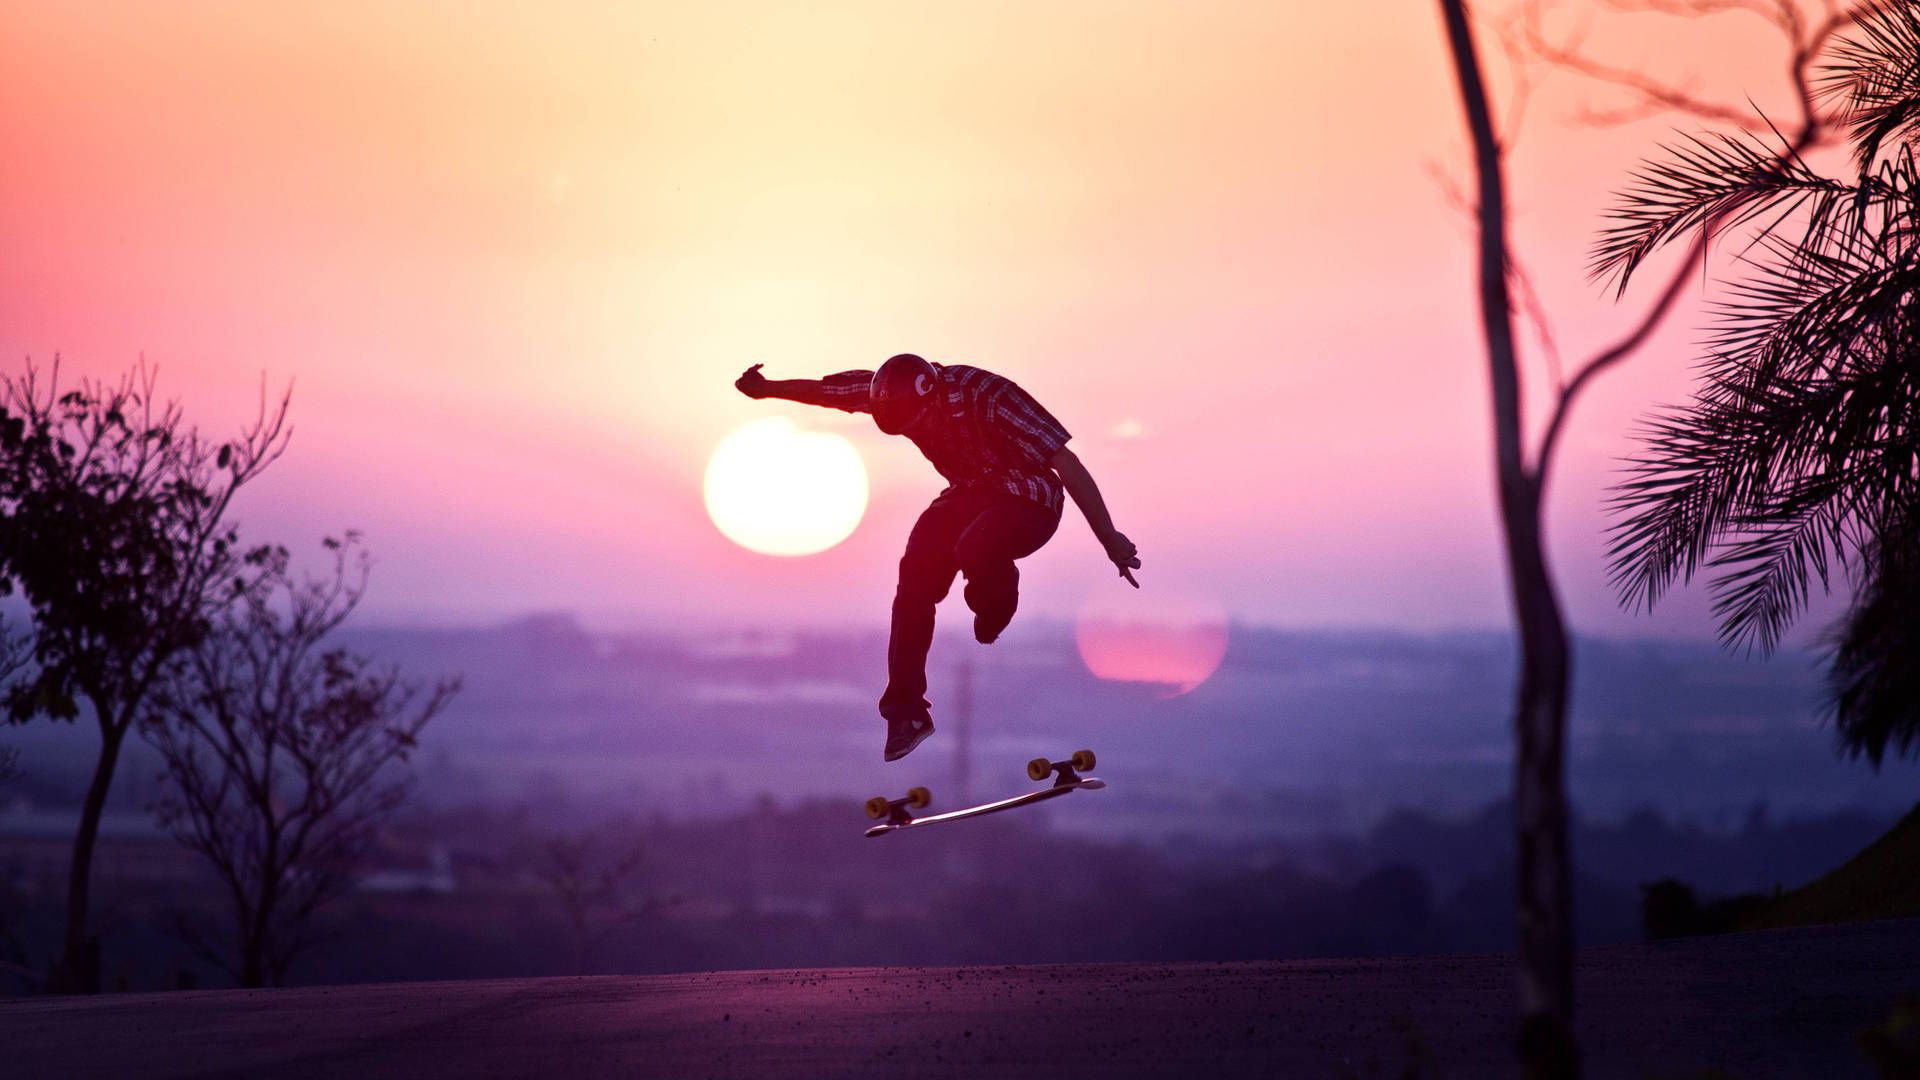 Aesthetic Skater Boy Silhouette Background